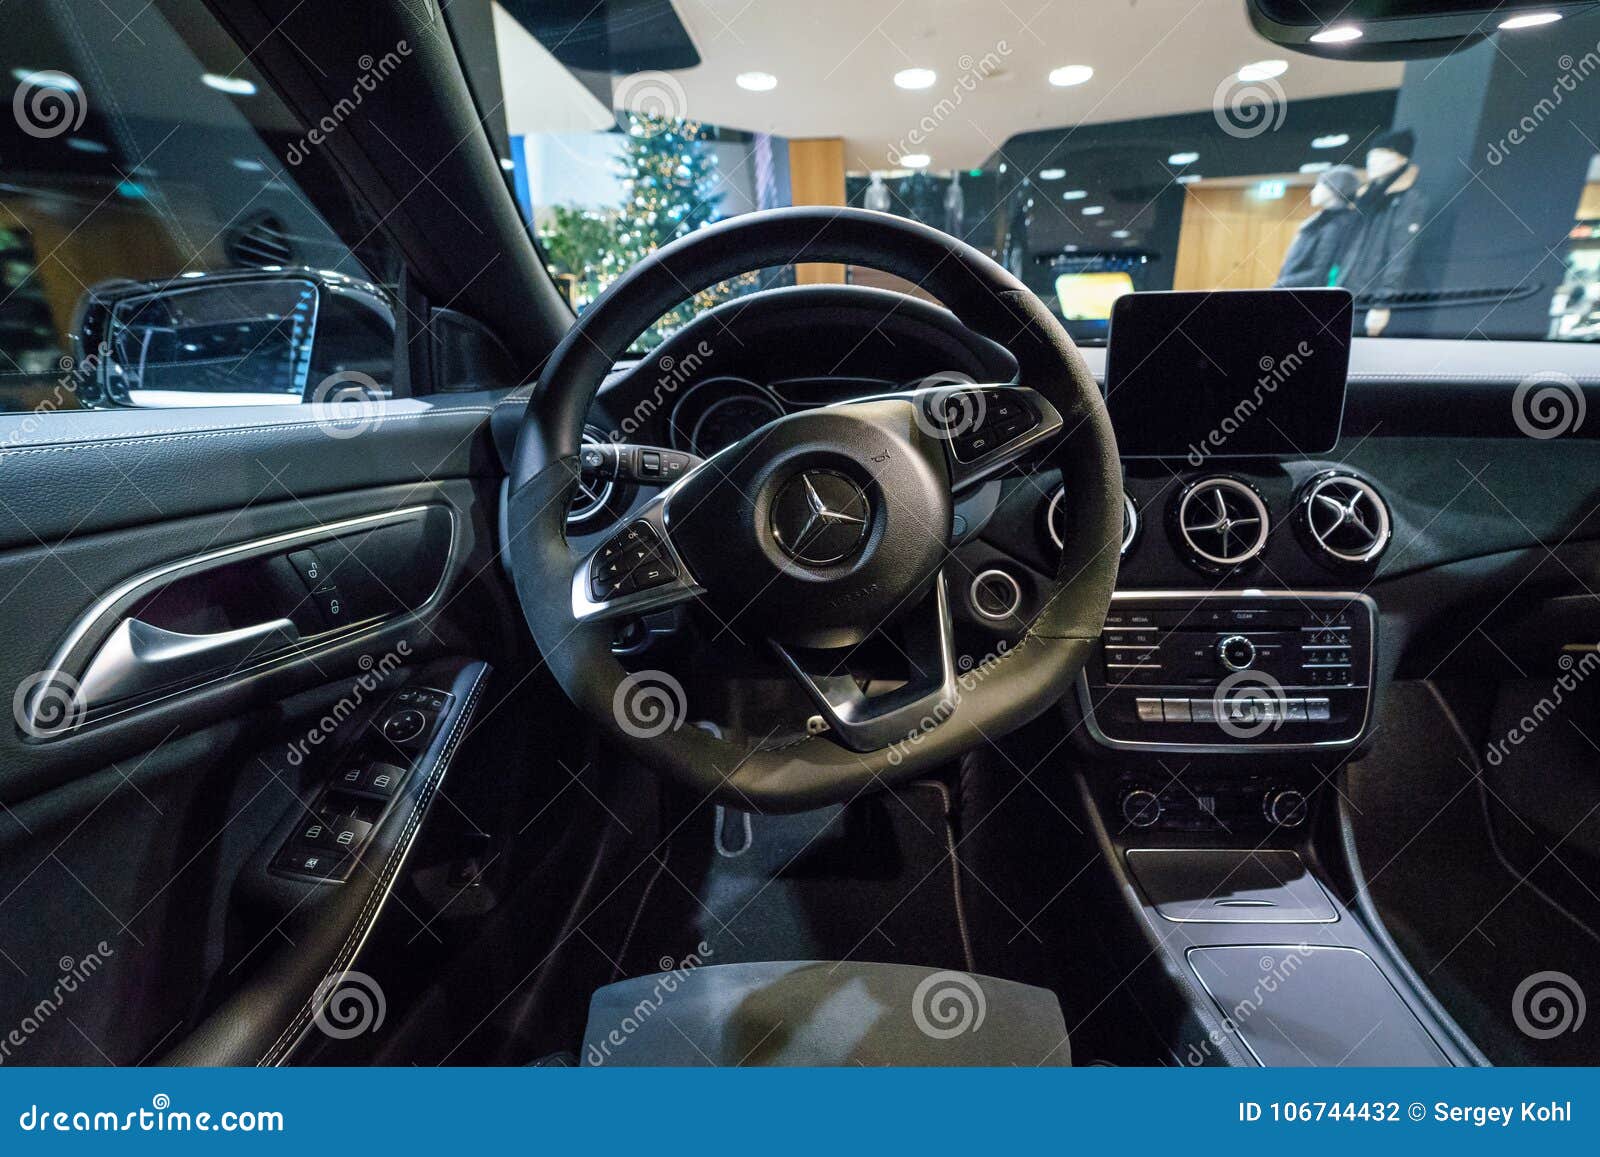 Interior Of Subcompact Executive Car Mercedes Benz Cla Class